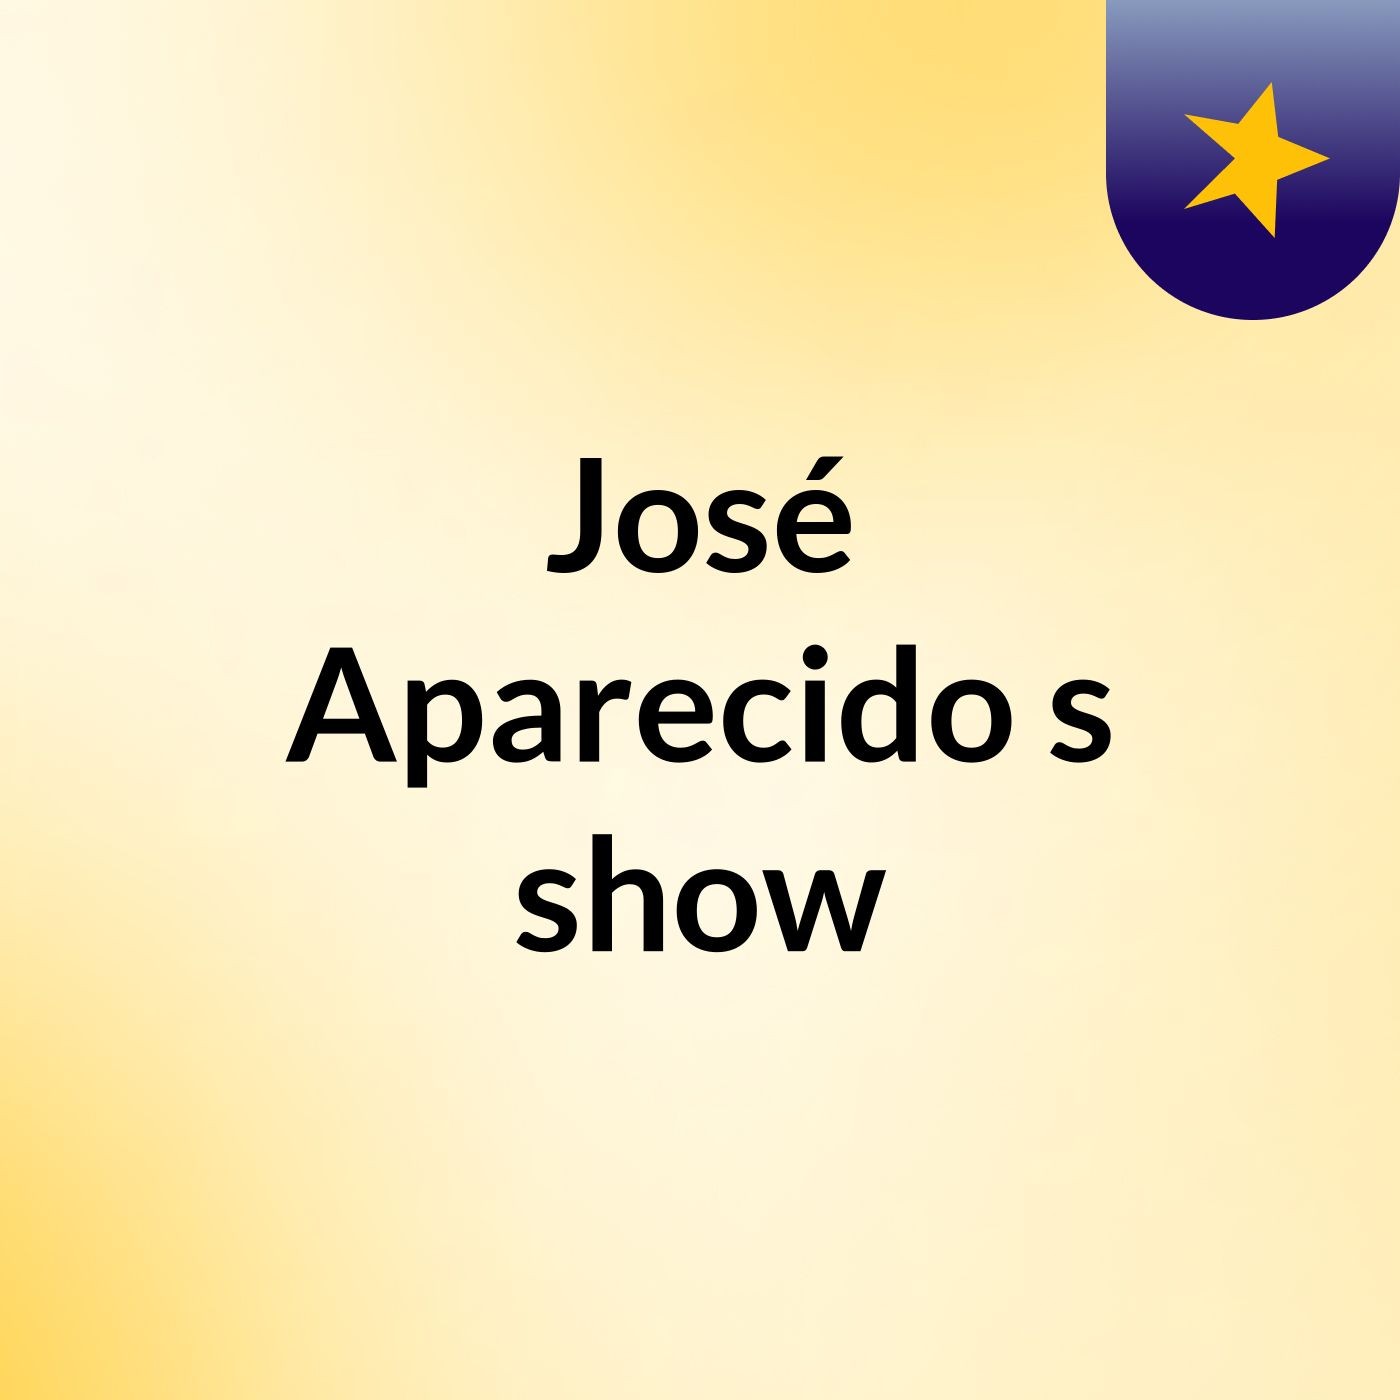 José Aparecido's show